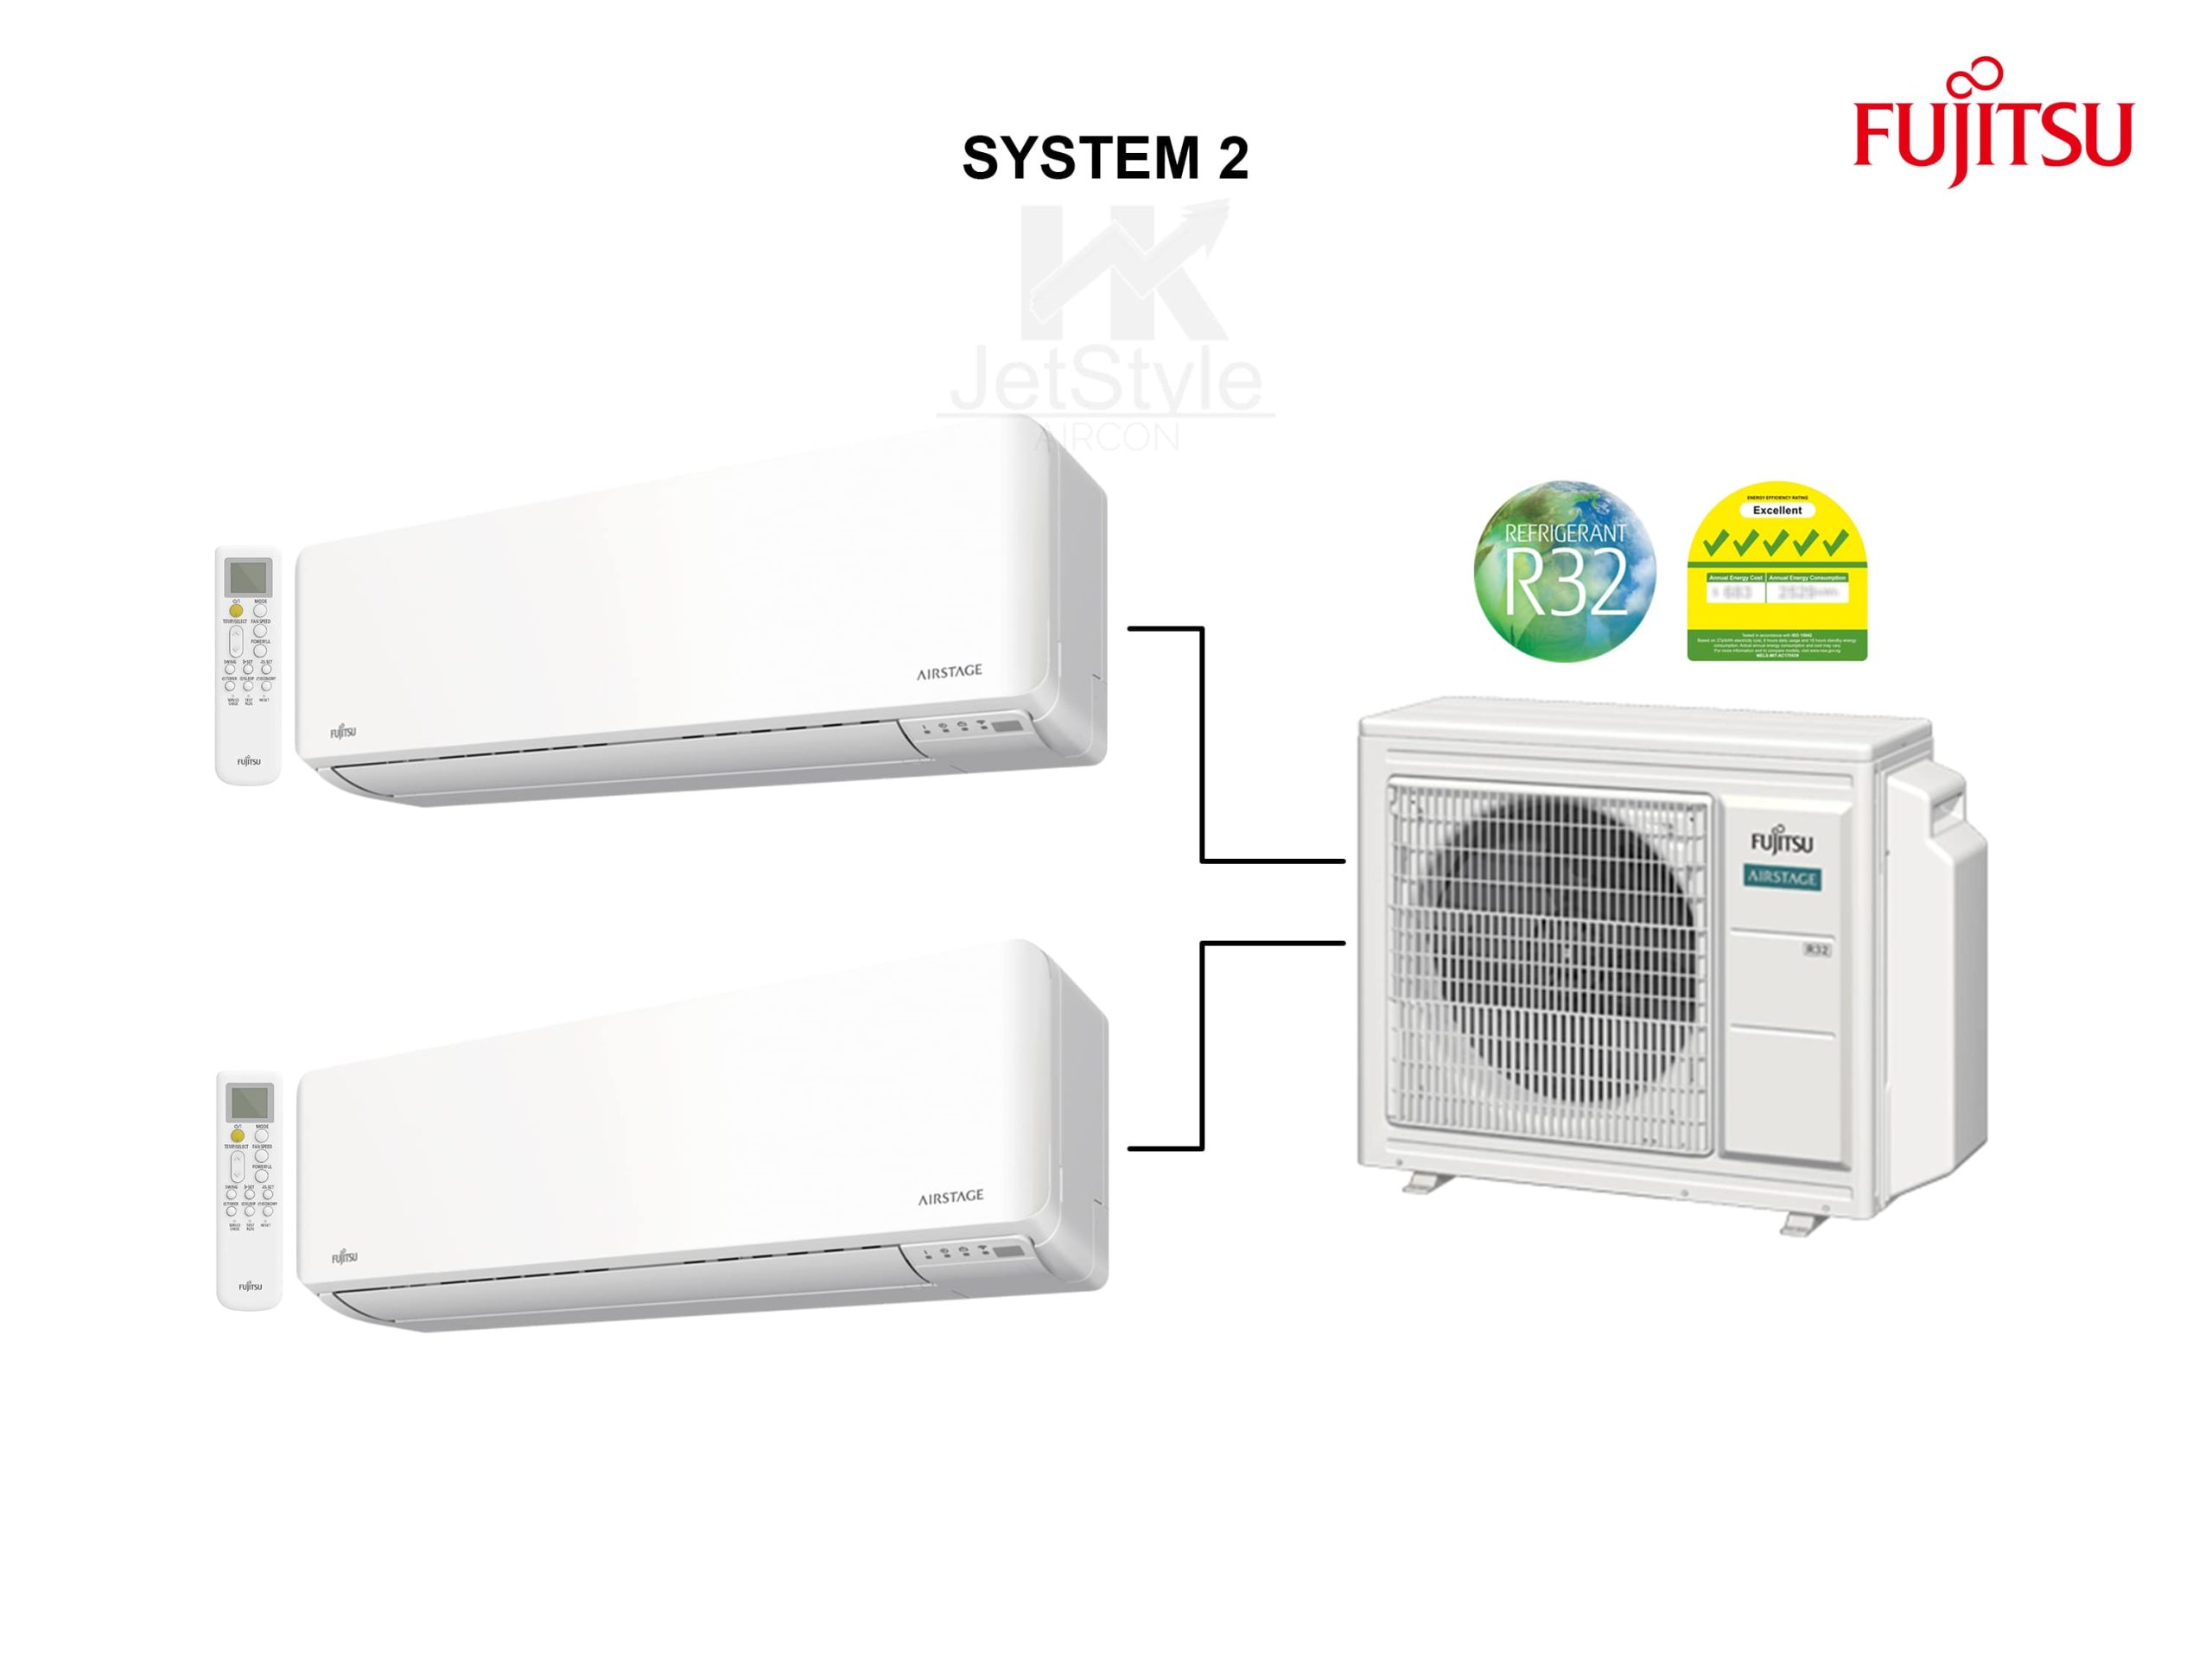 Fujitsu System 2